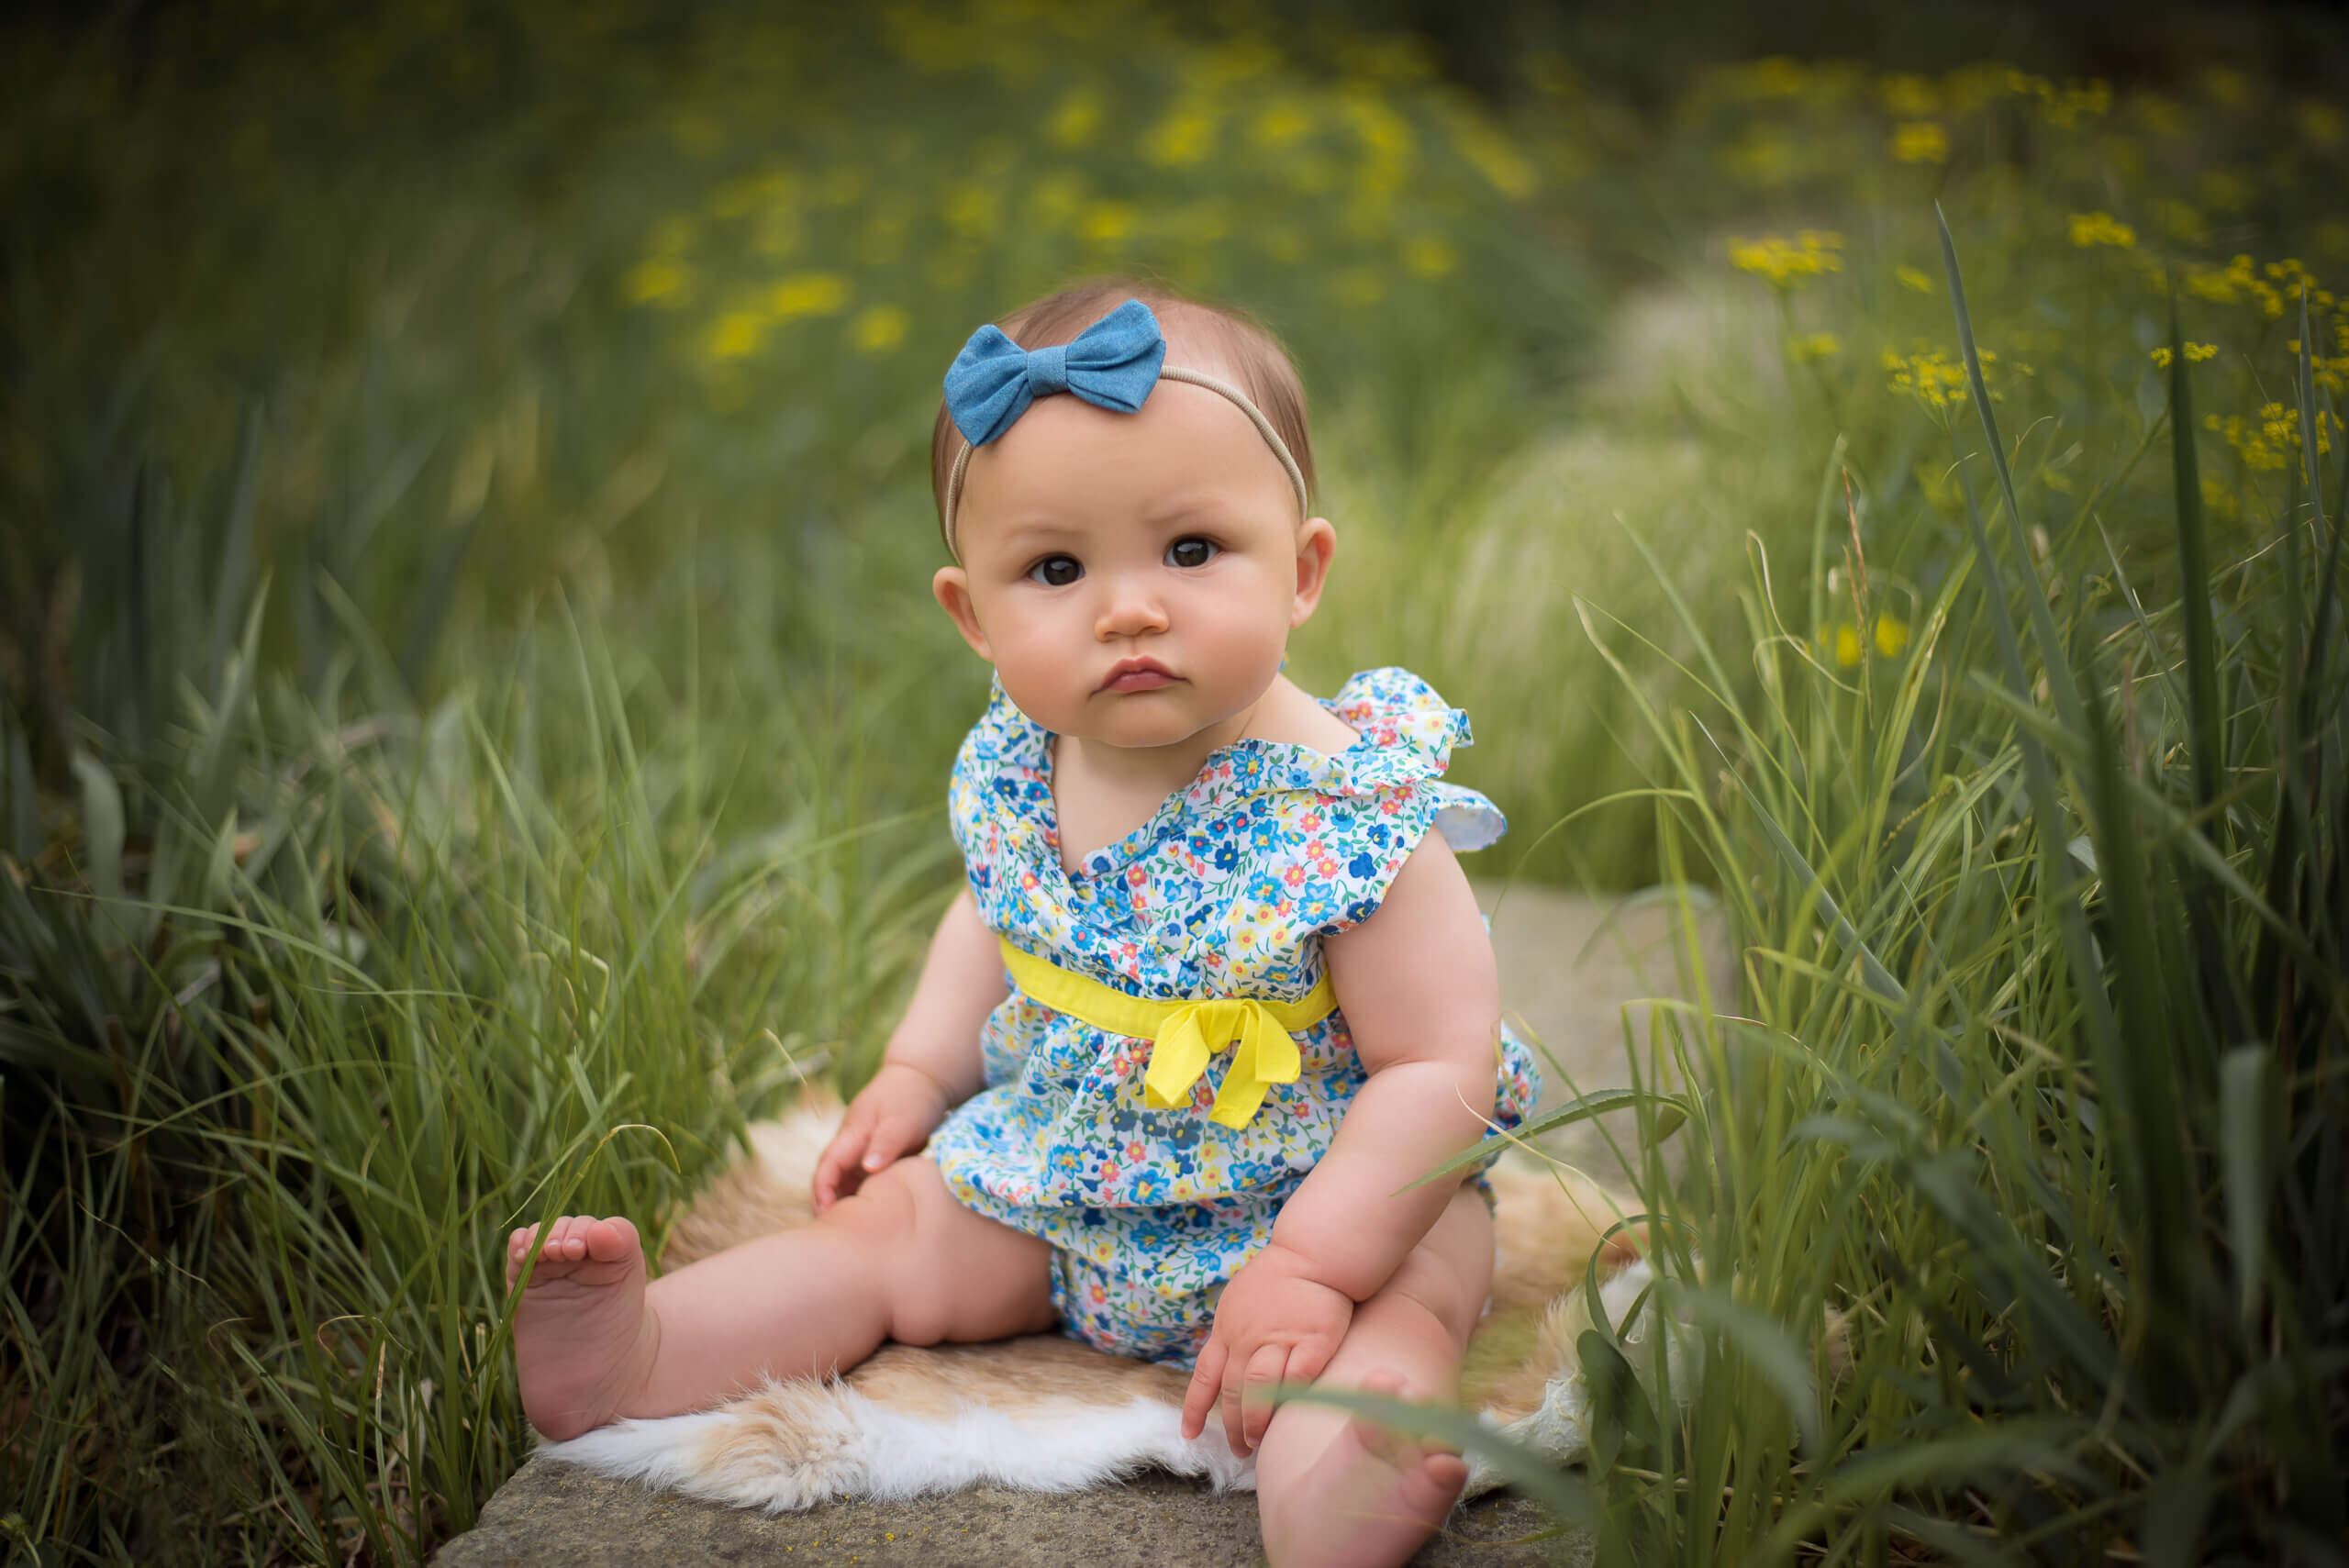 Sesiones de Fotos para bebés de 1 año - Romper el Cascarón